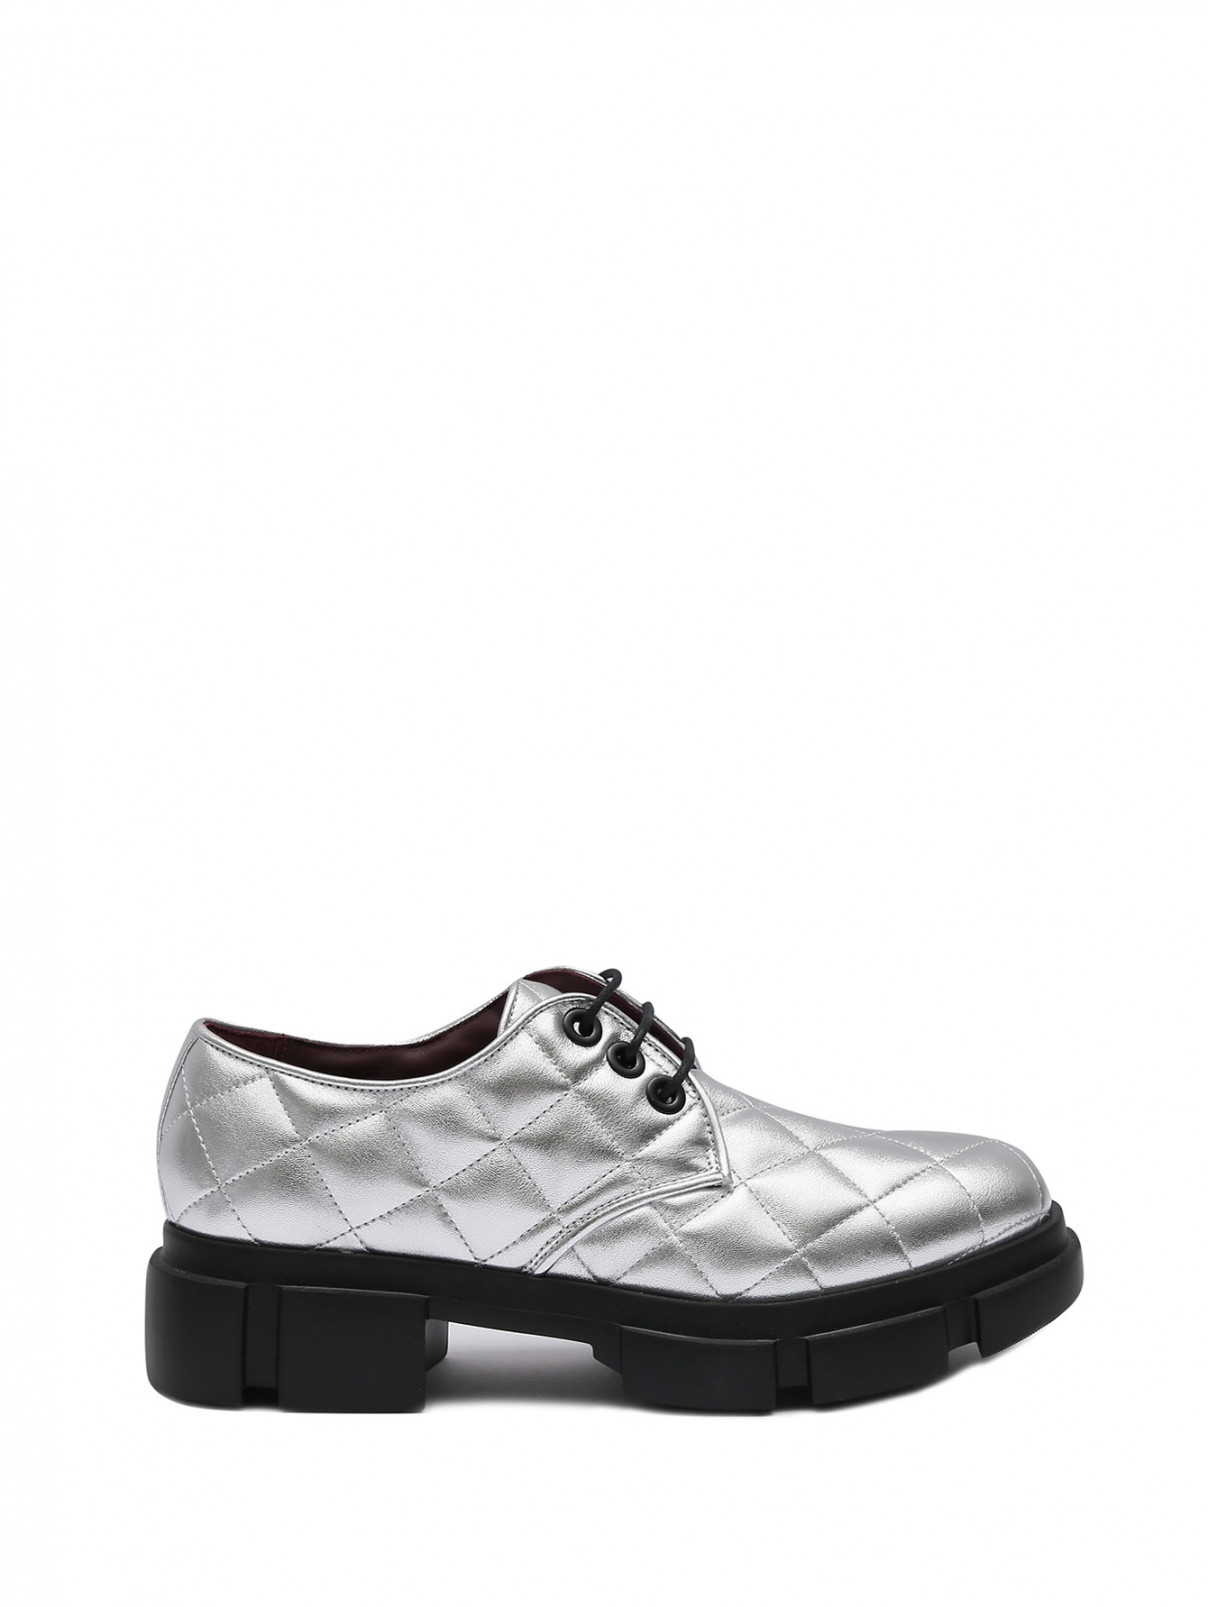 Стеганые ботинки из кожи Antonio Marras  –  Общий вид  – Цвет:  Серый